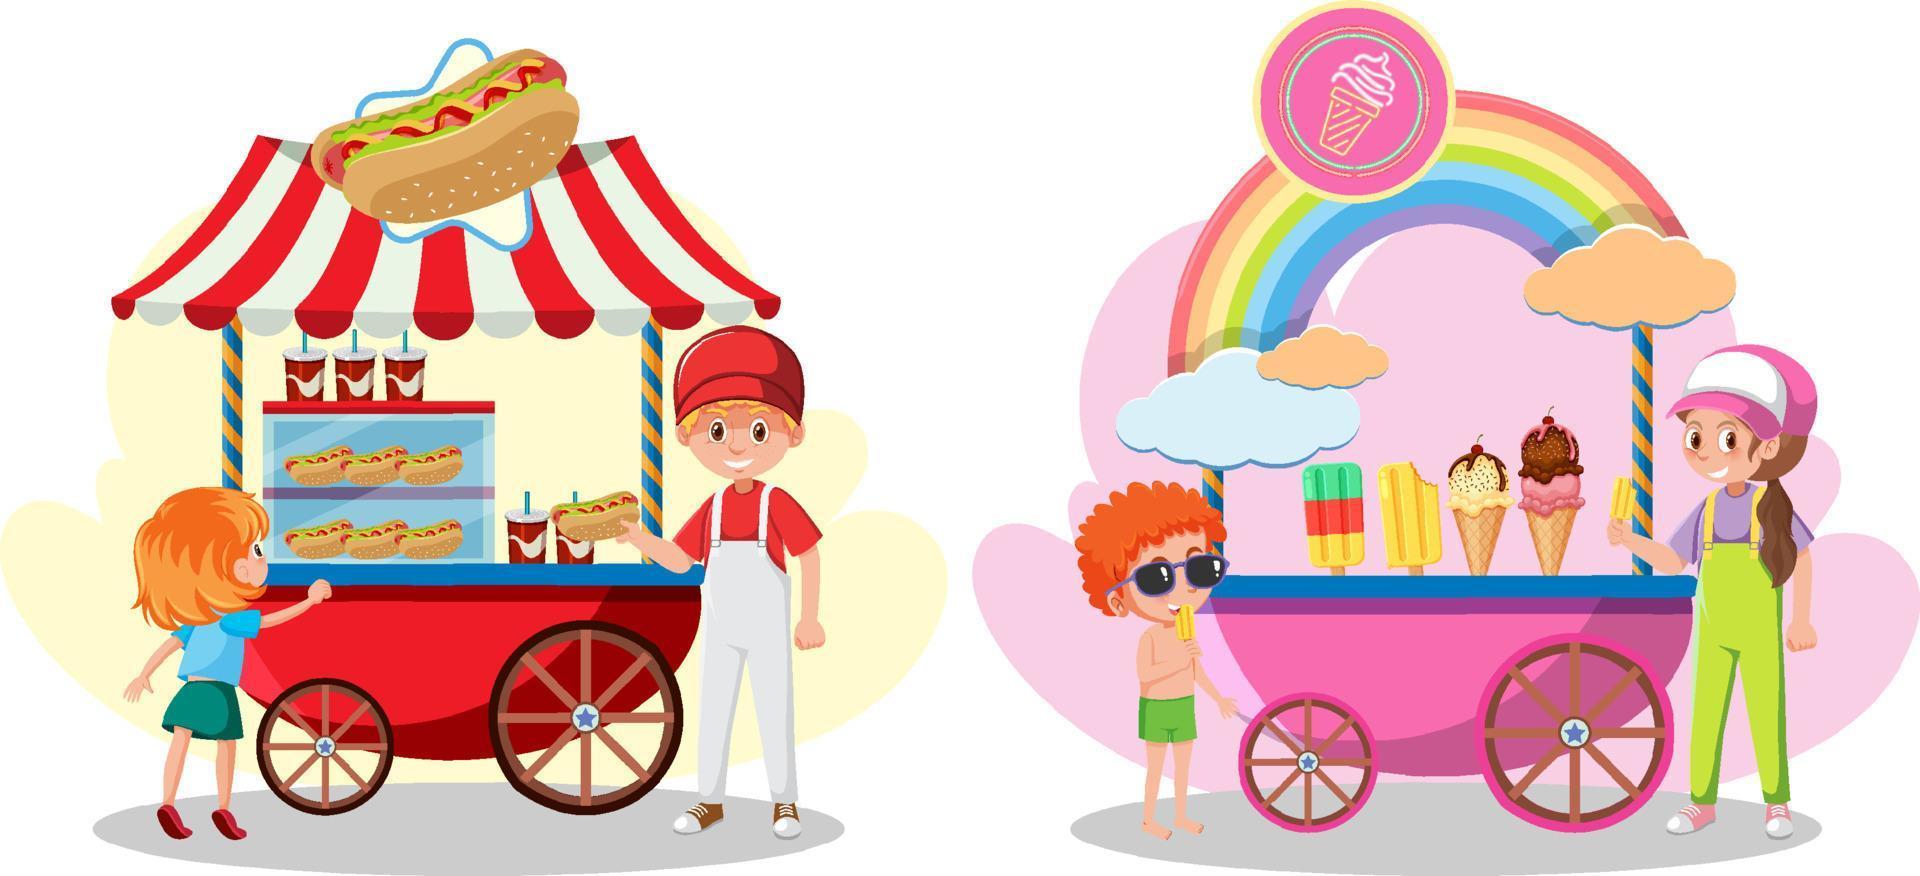 conceito de carrinho de comida de rua com carrinho de sorvete e carrinho de cachorro-quente vetor